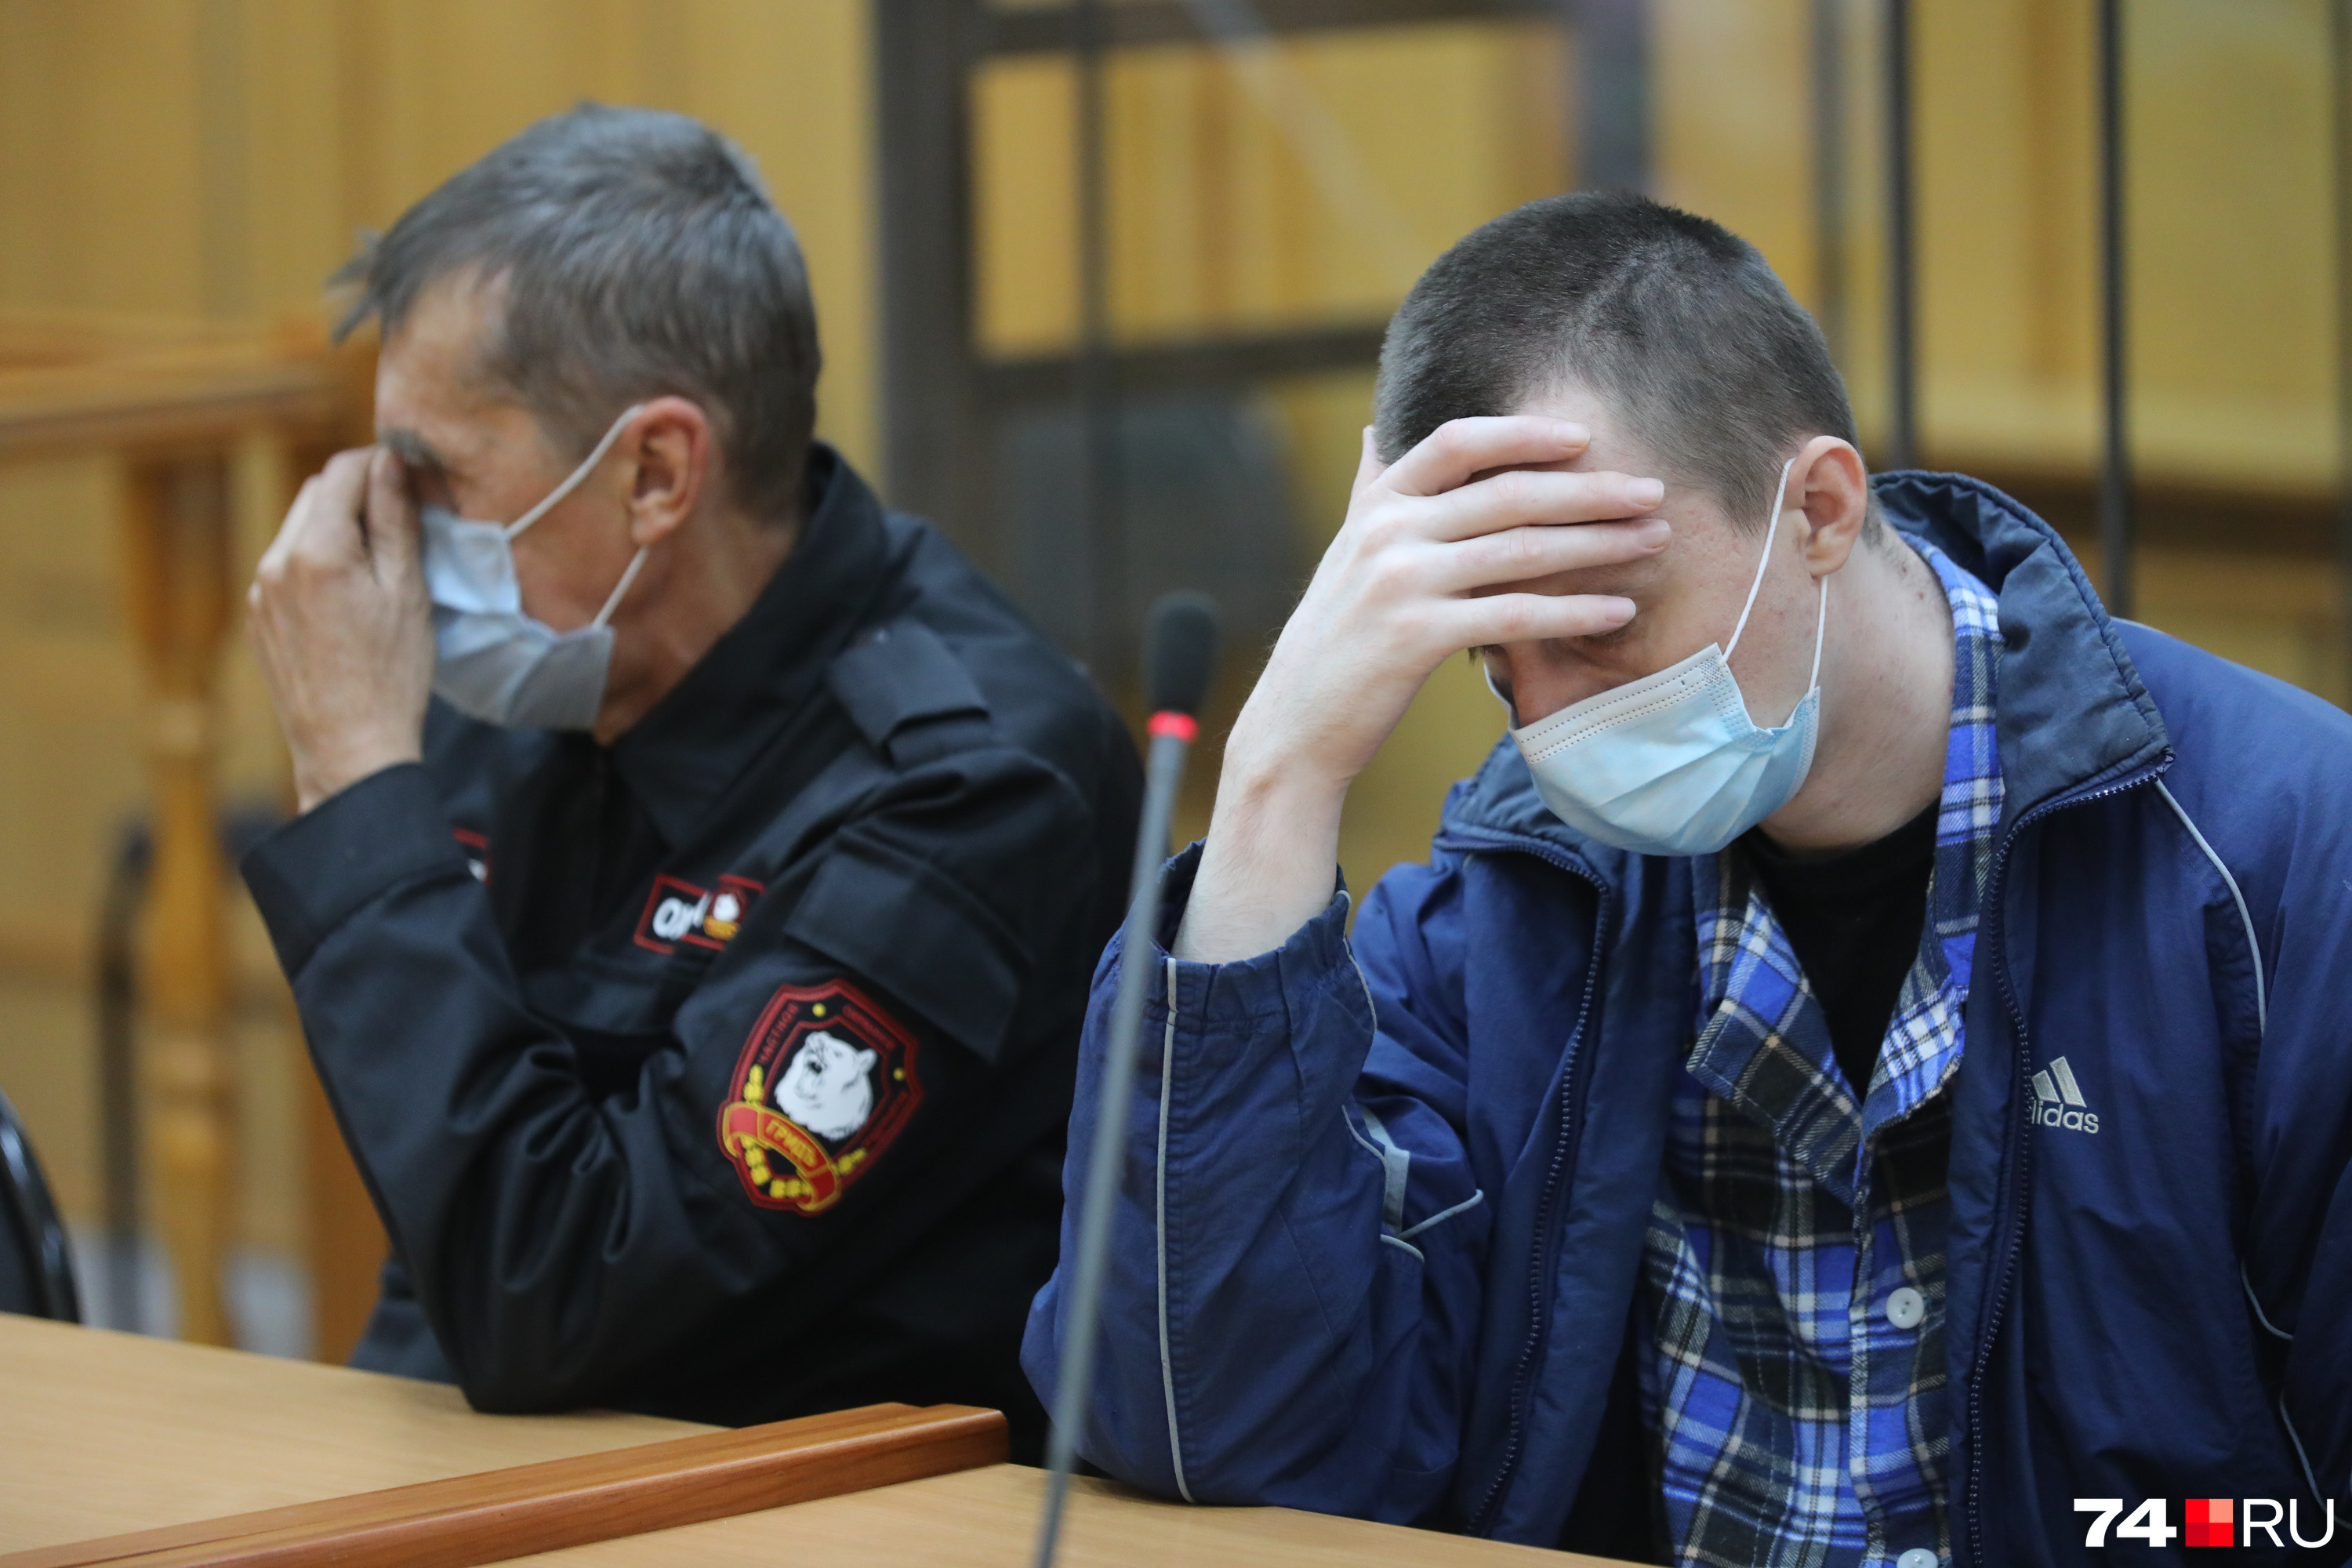 Перед оглашением, в ожидании судьи Алексеев постоянно прикрывал лицо рукой. Ему явно не нравилось внимание прессы и щелчки фотоаппаратов